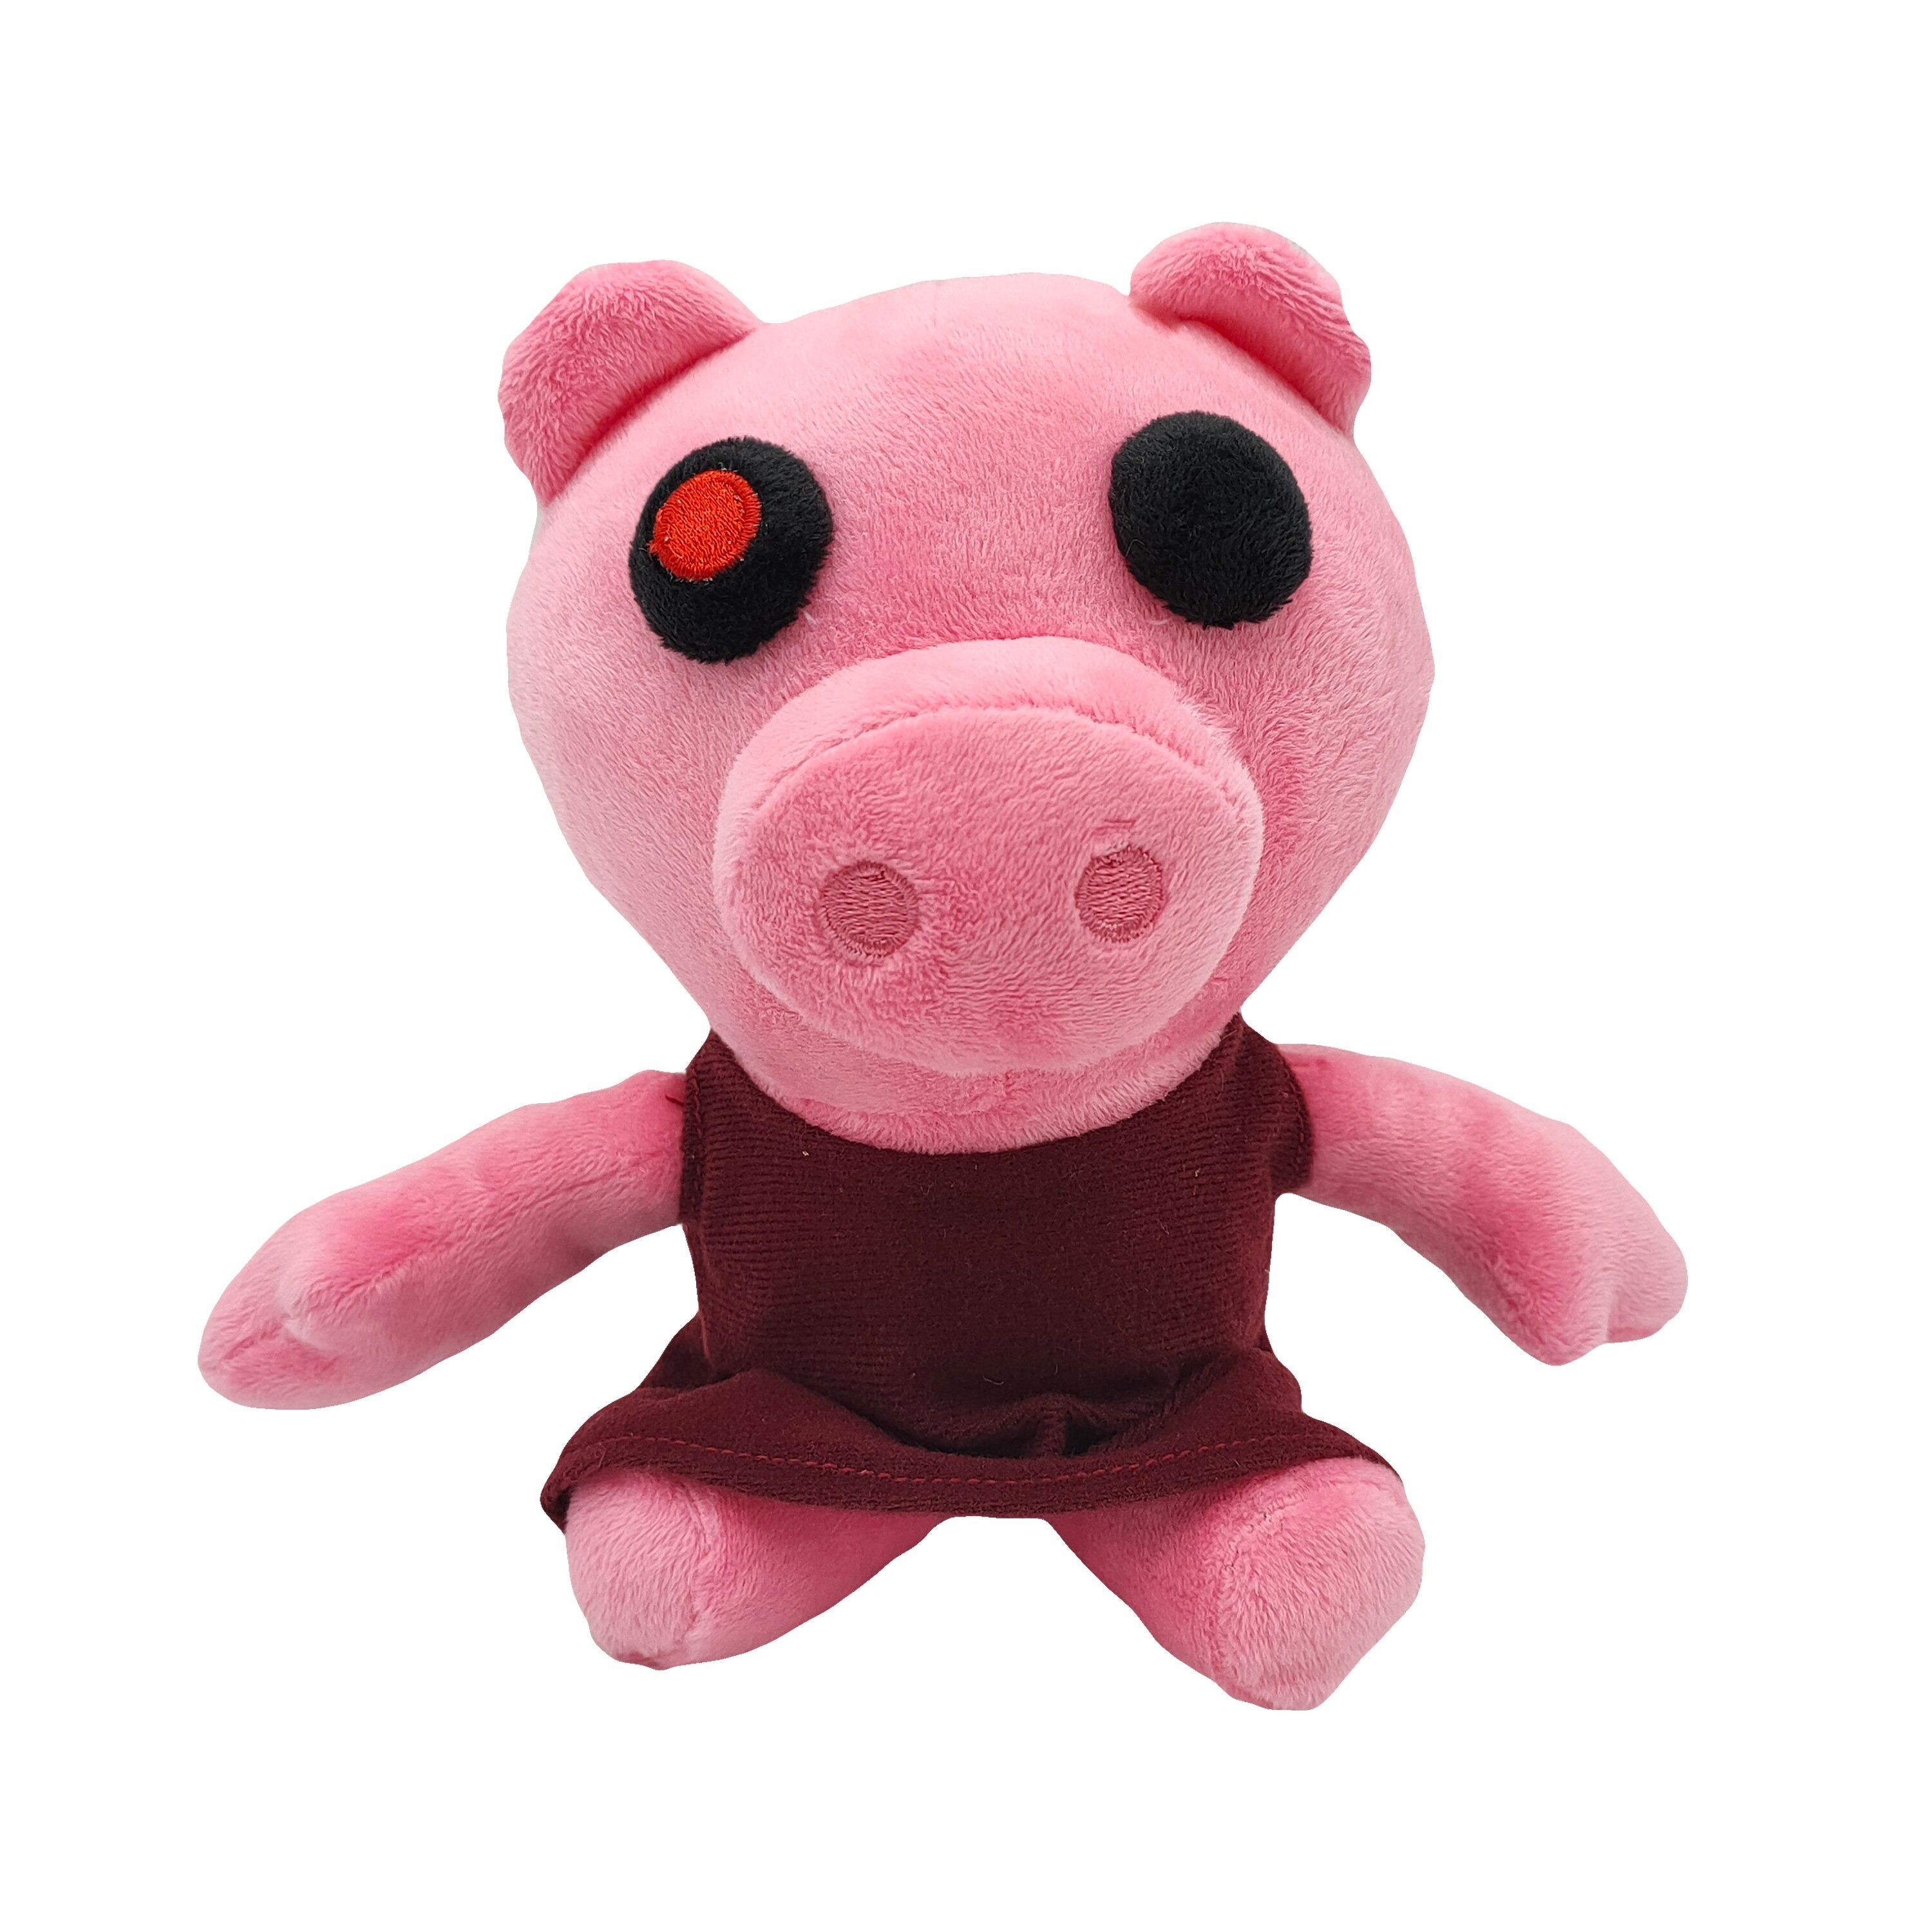 Piggy pink 20 cm new cute soft r - Sapnap Store